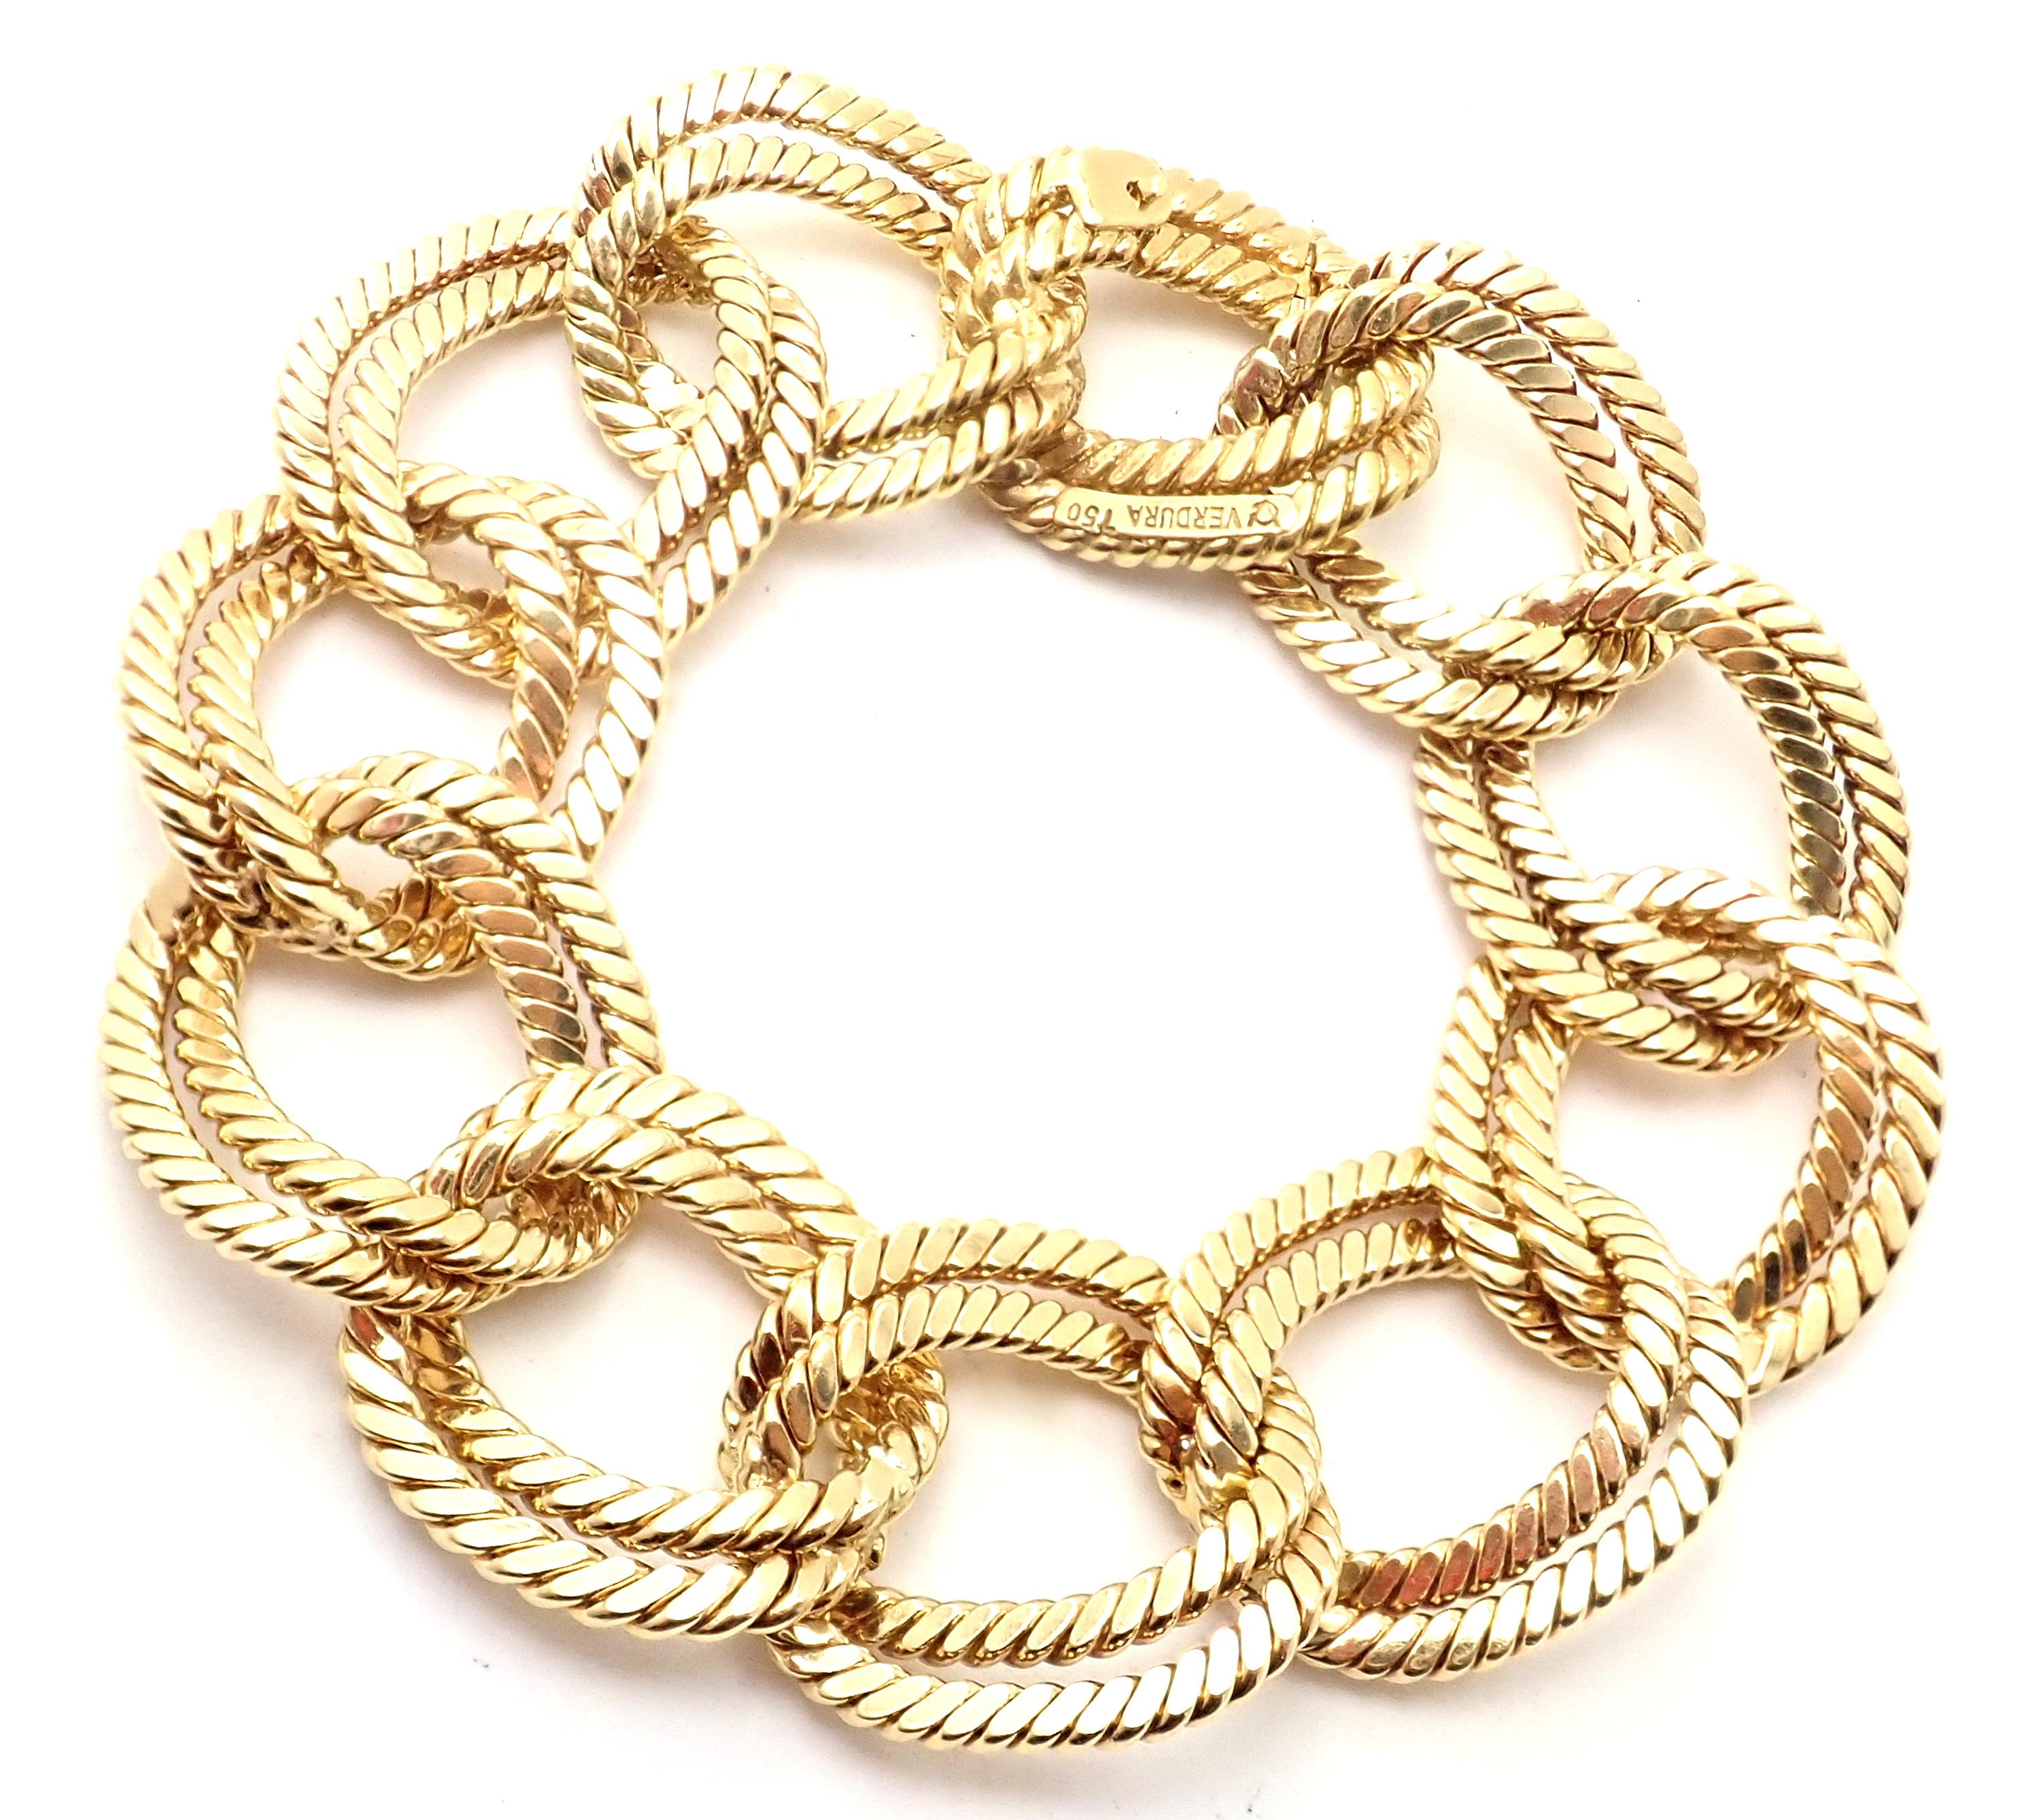 18k Gelbgold Rope Link Armband von Verdura.
Einzelheiten: 
Gewicht: 73.6 Gramm
Länge: 7,5